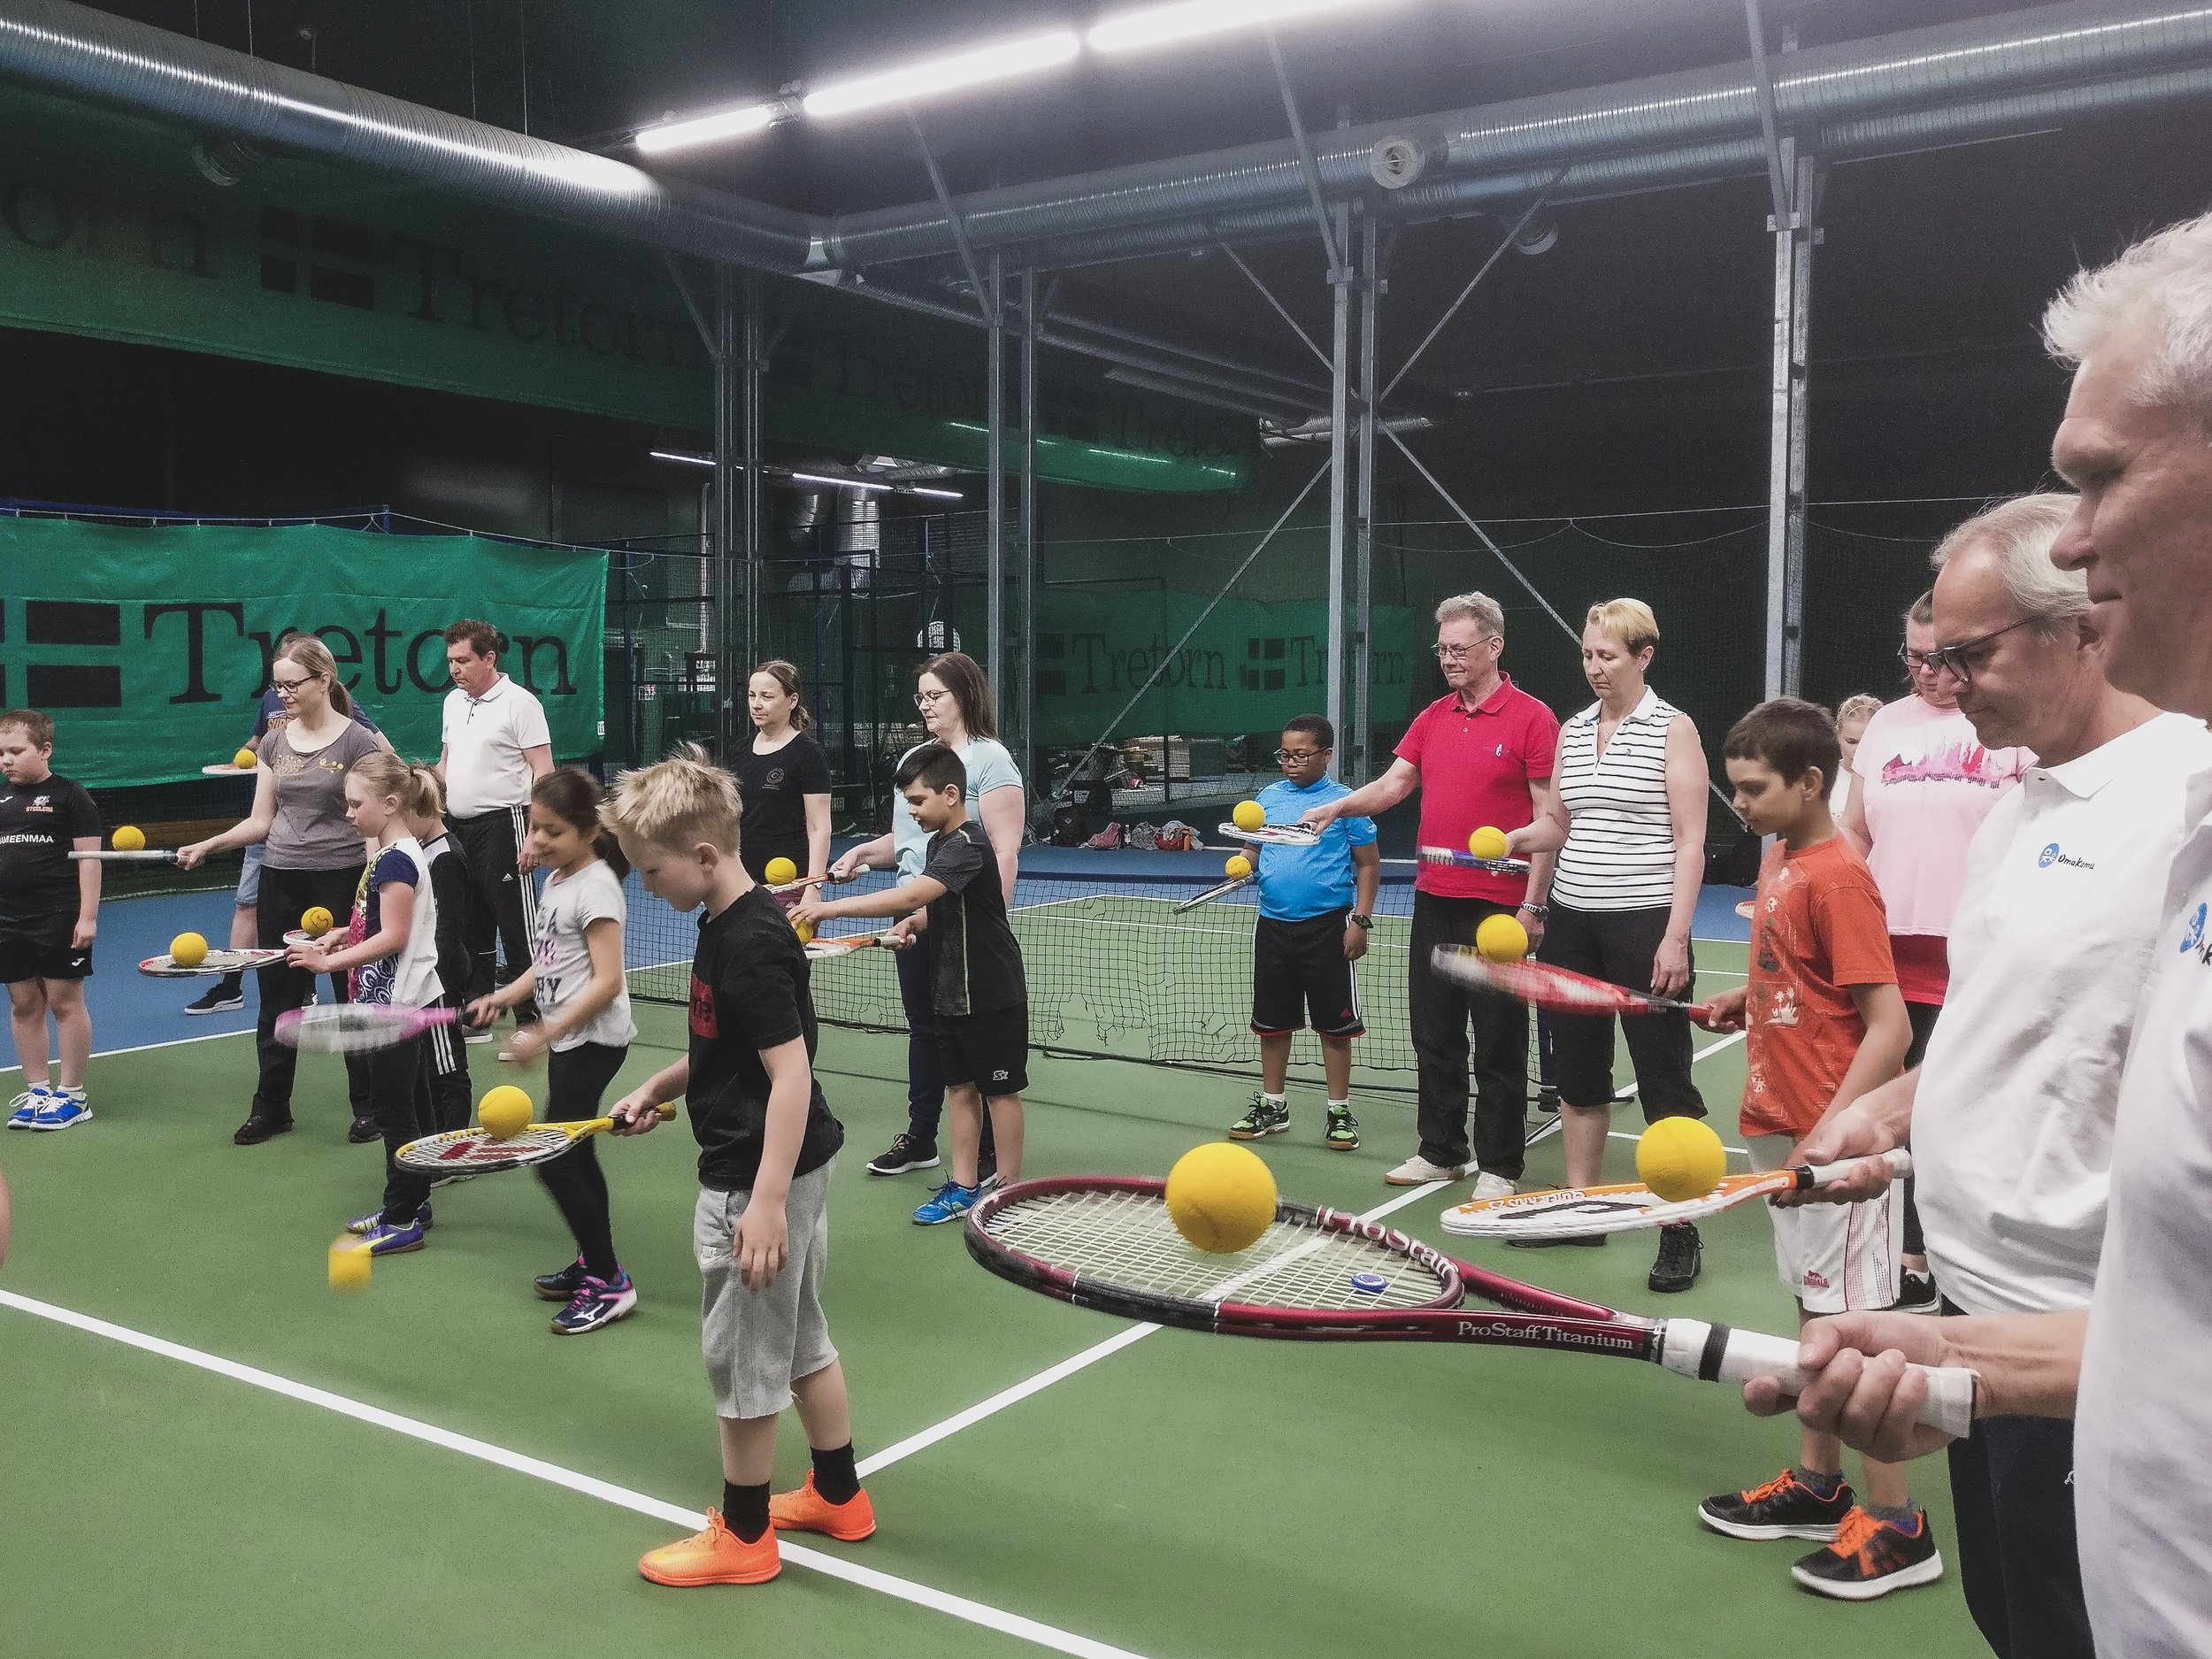 OmaKamun tennistapahtuma lapsille, nuorille ja aikuiskavereille. Ohjaamassa Jarkko Nieminen. Tukihenkilötoiminta ja vapaaehtoistyö.